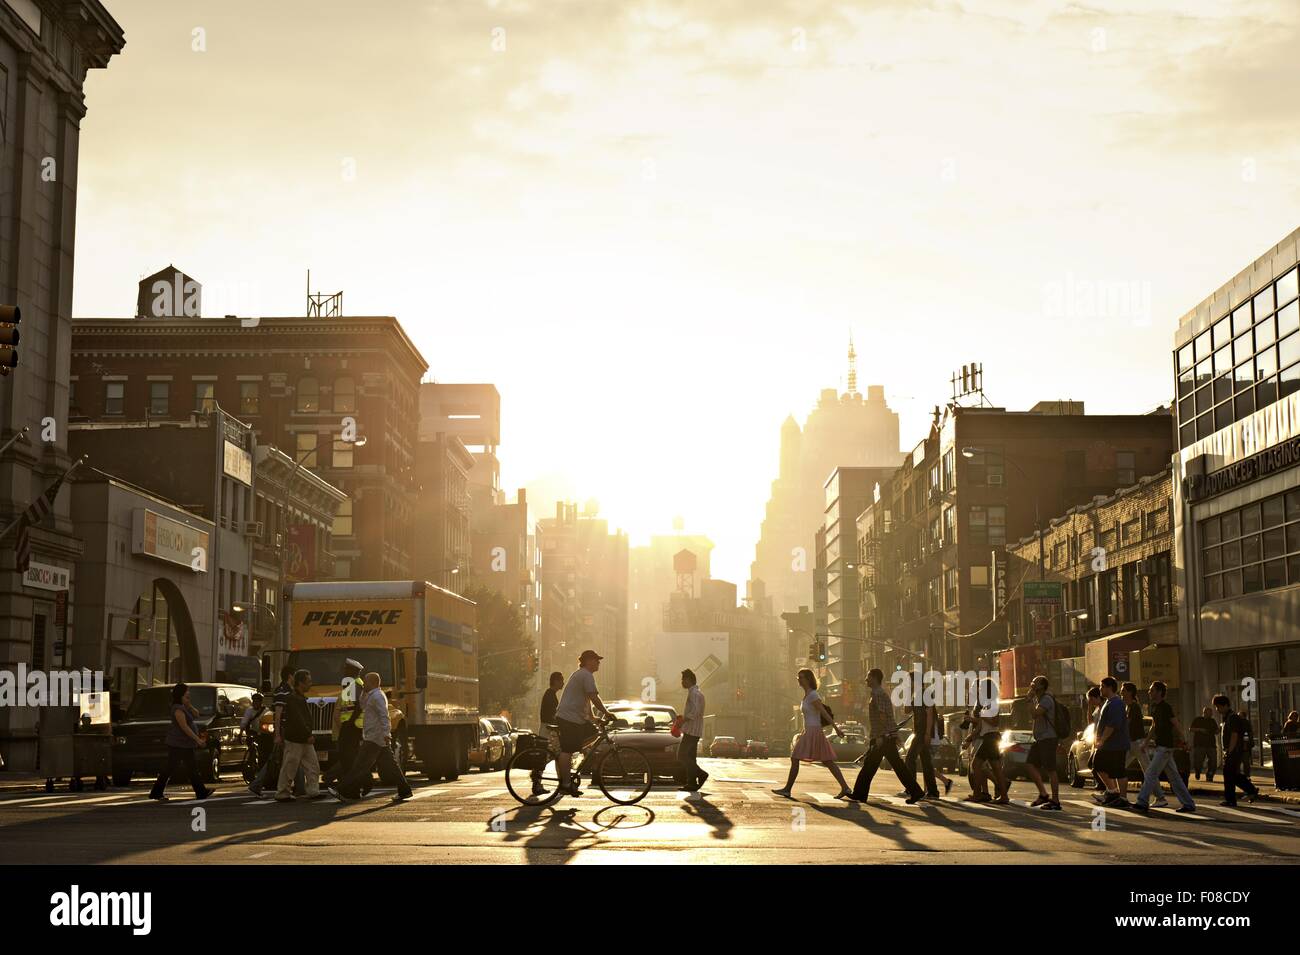 Menschen Kreuzung Straße in Chinatown Street während des Sonnenuntergangs, New York, USA Stockfoto